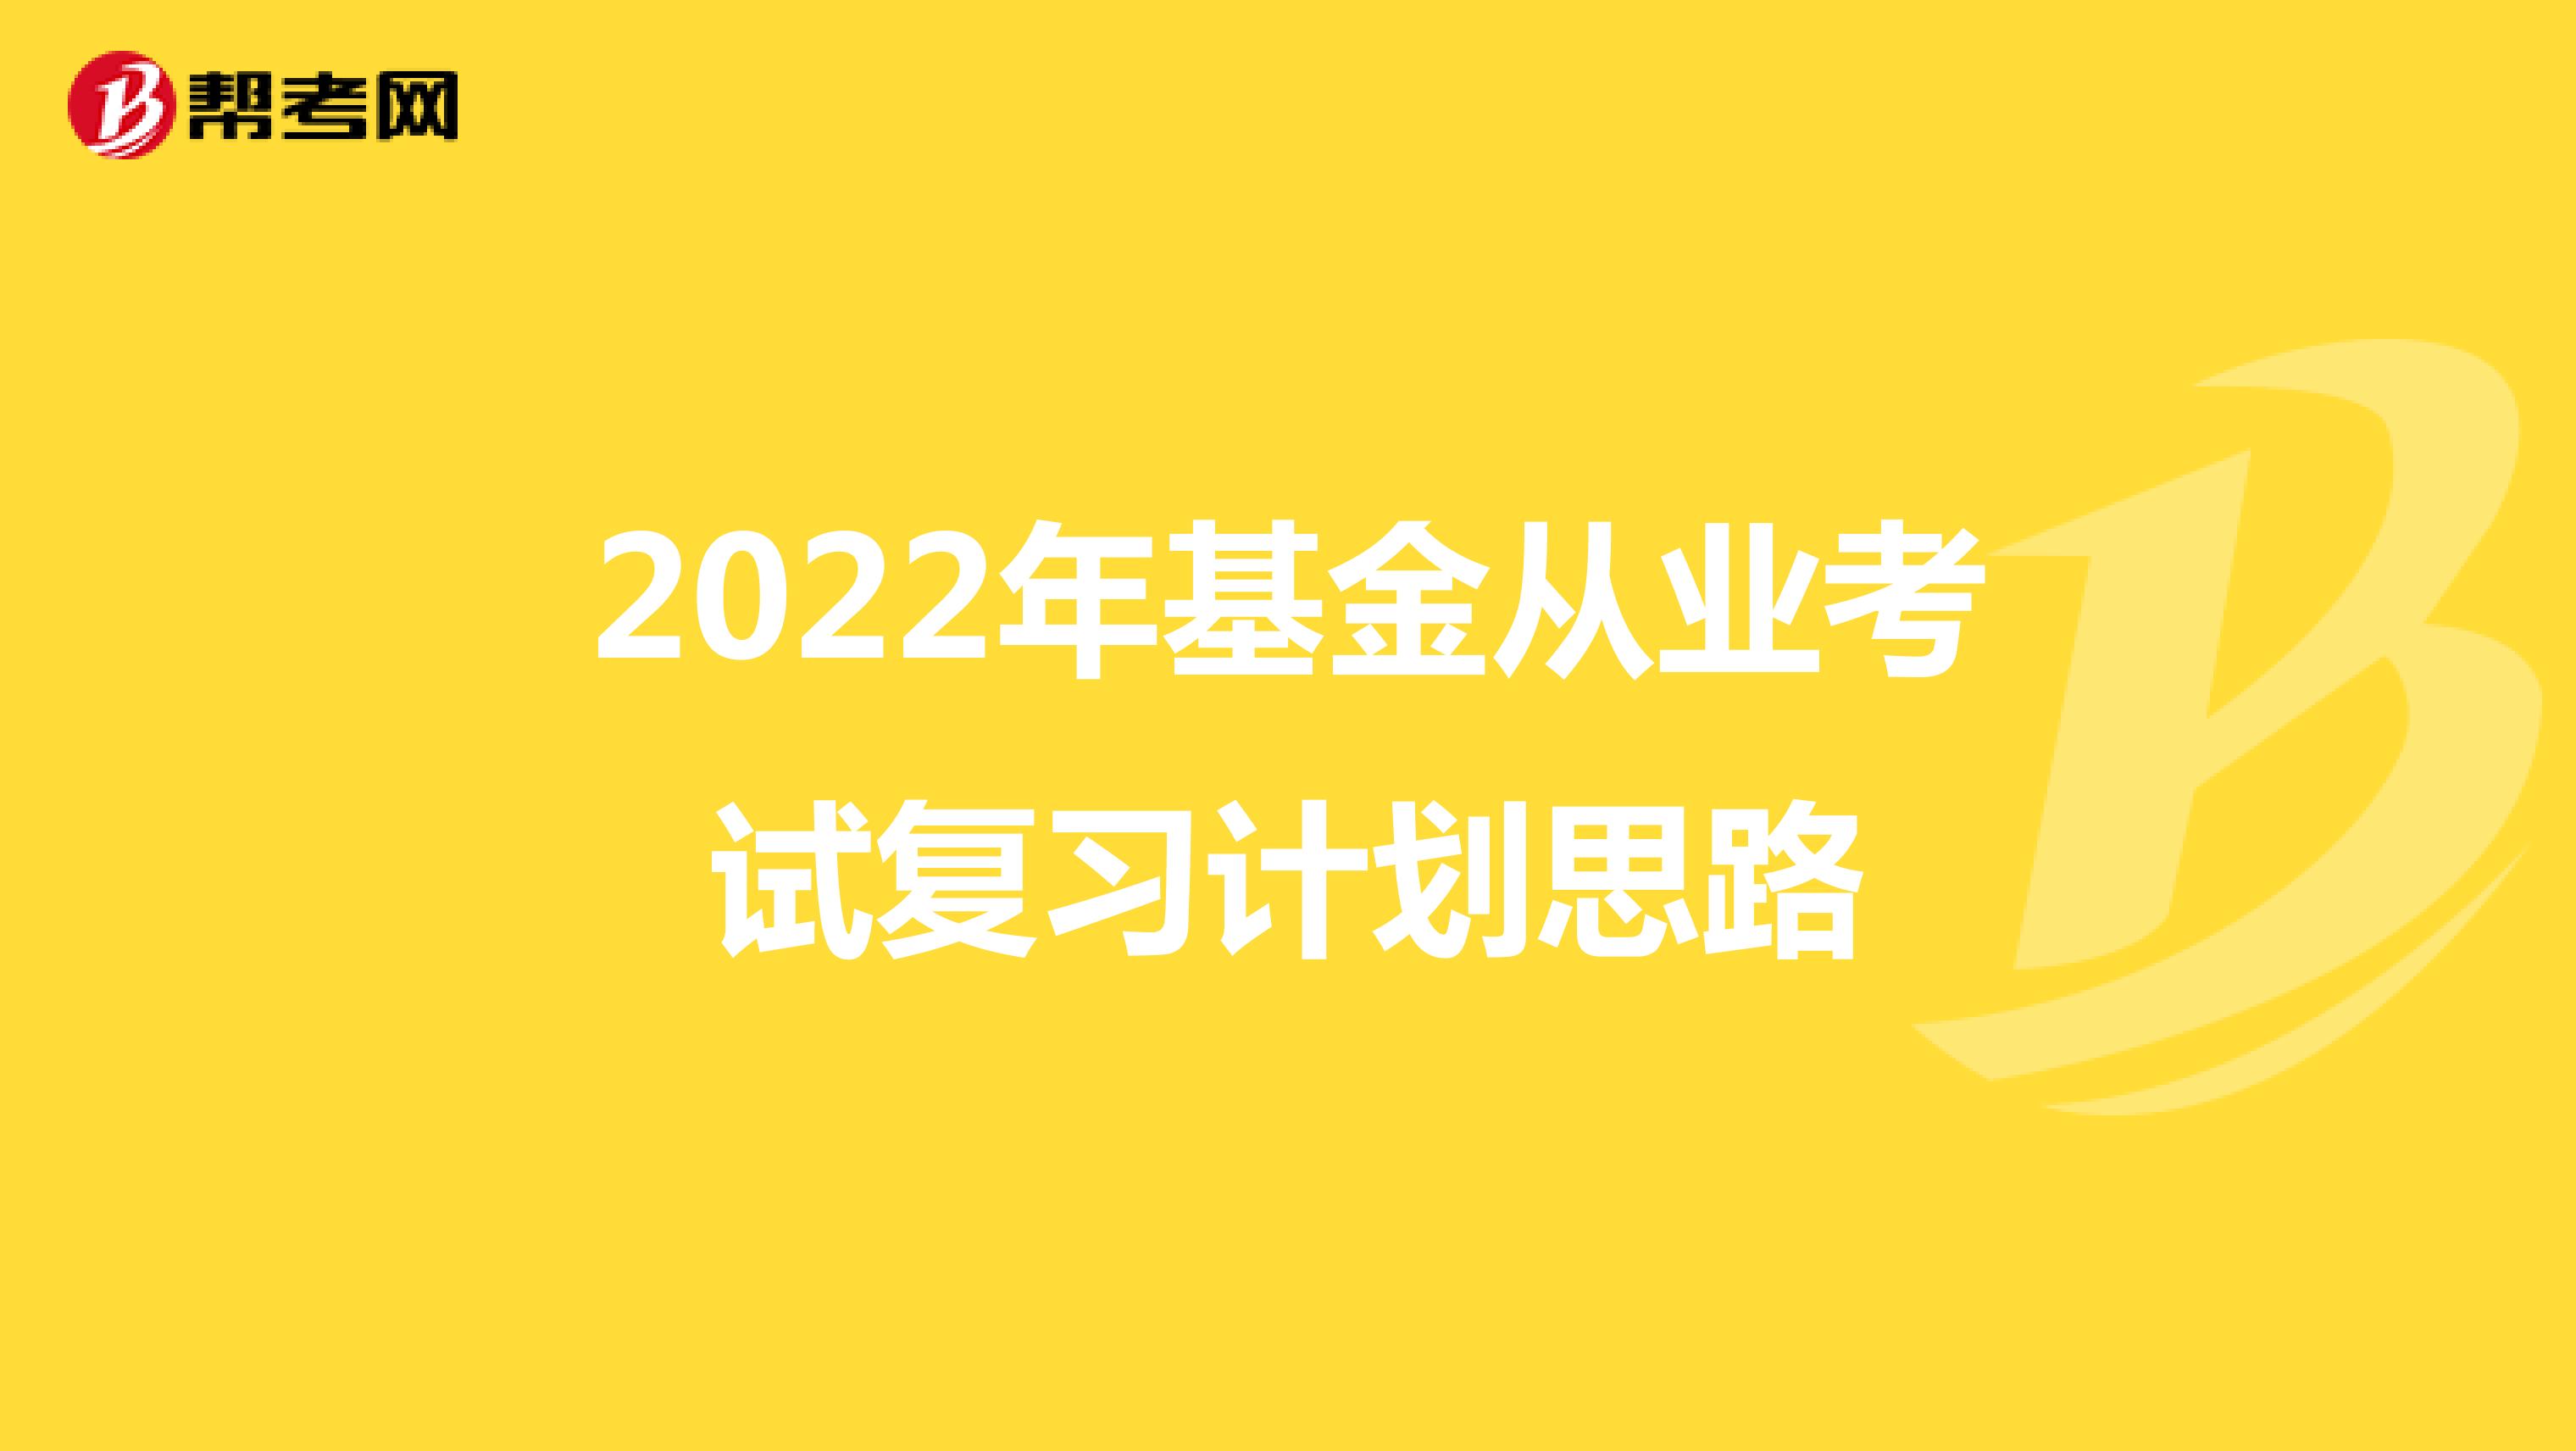 2022年基金从业考试复习计划思路